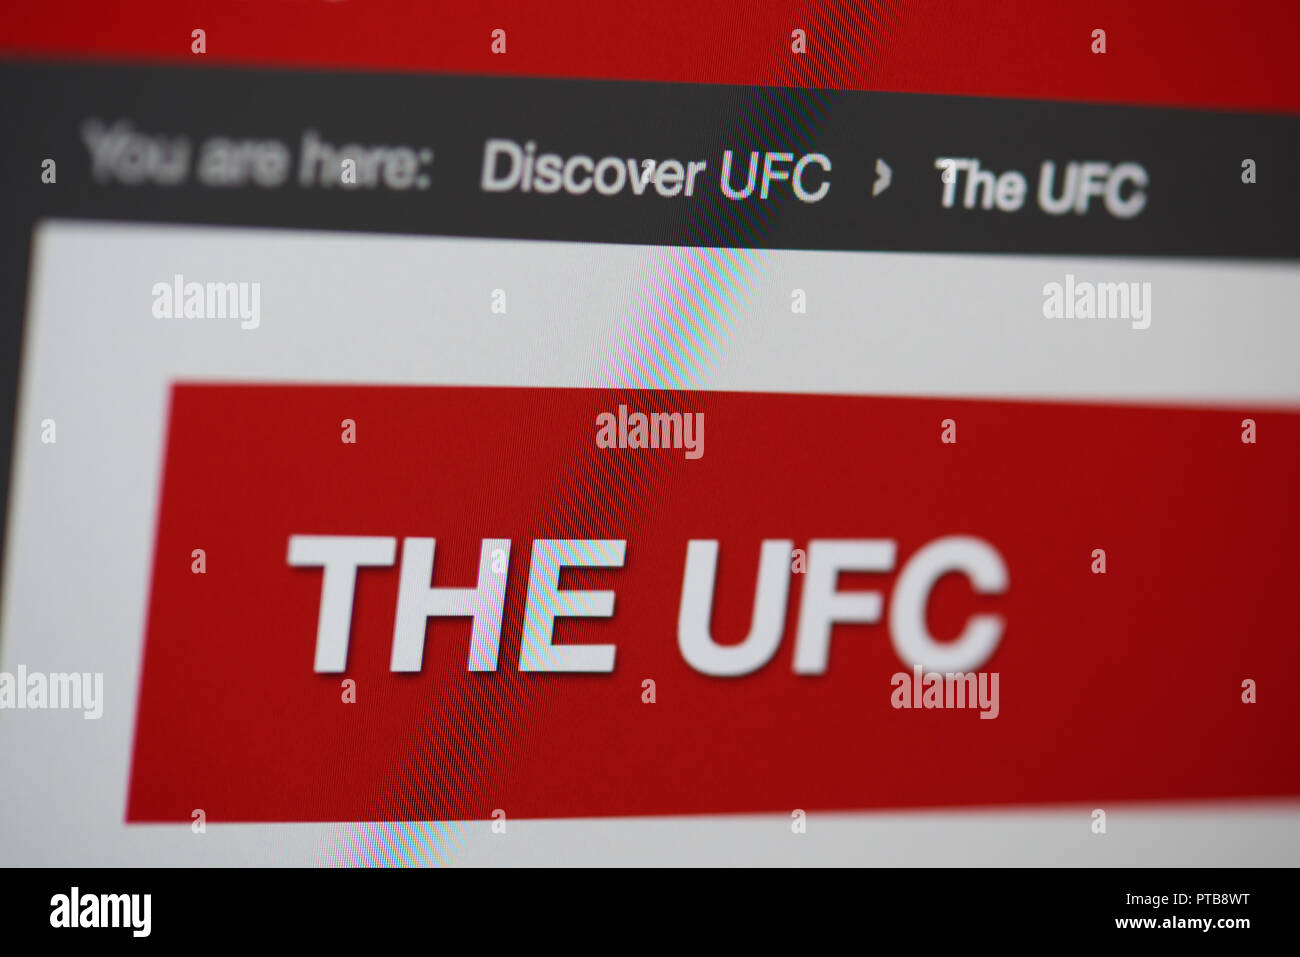 New York, USA - Oktober 8, 2018: Entdecken Sie die UFC-Home Page auf dem Laptop Bildschirm Nähe zu sehen. Stockfoto